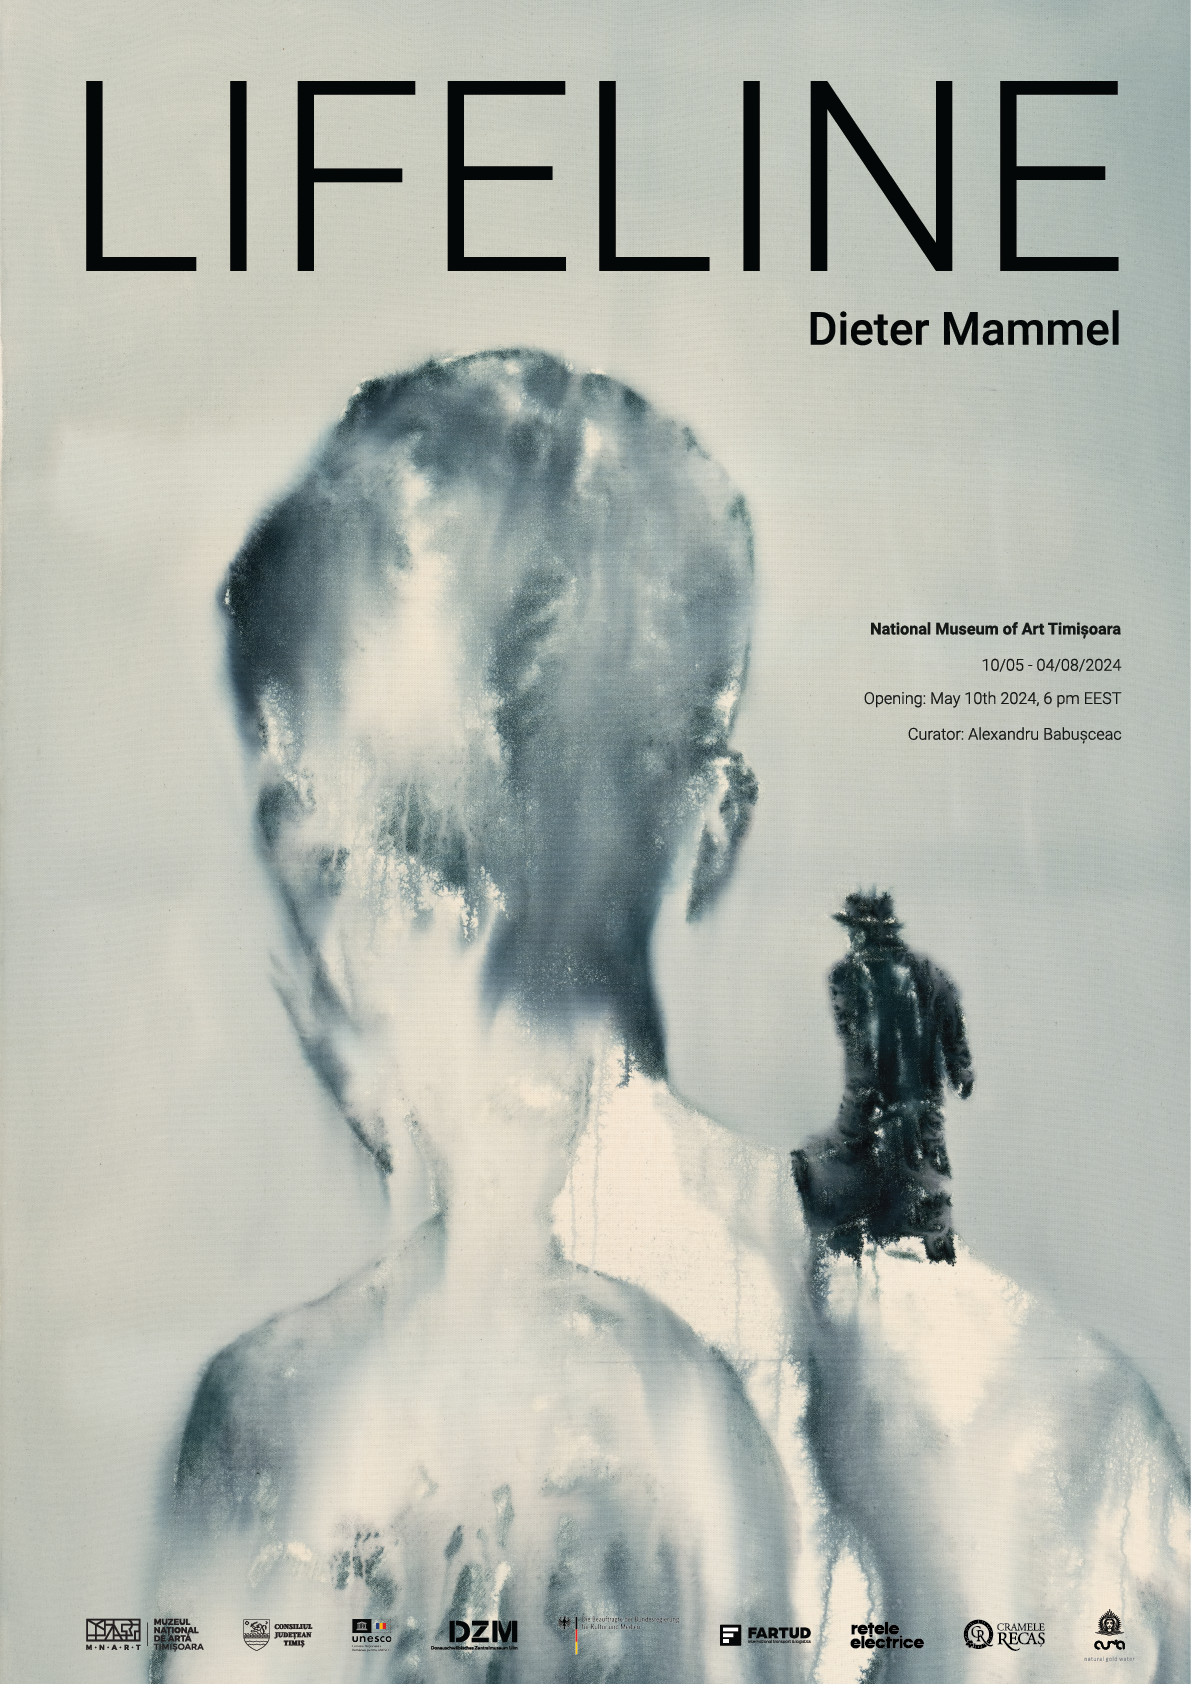 Afiș Dieter Mammel Web 01 (1)